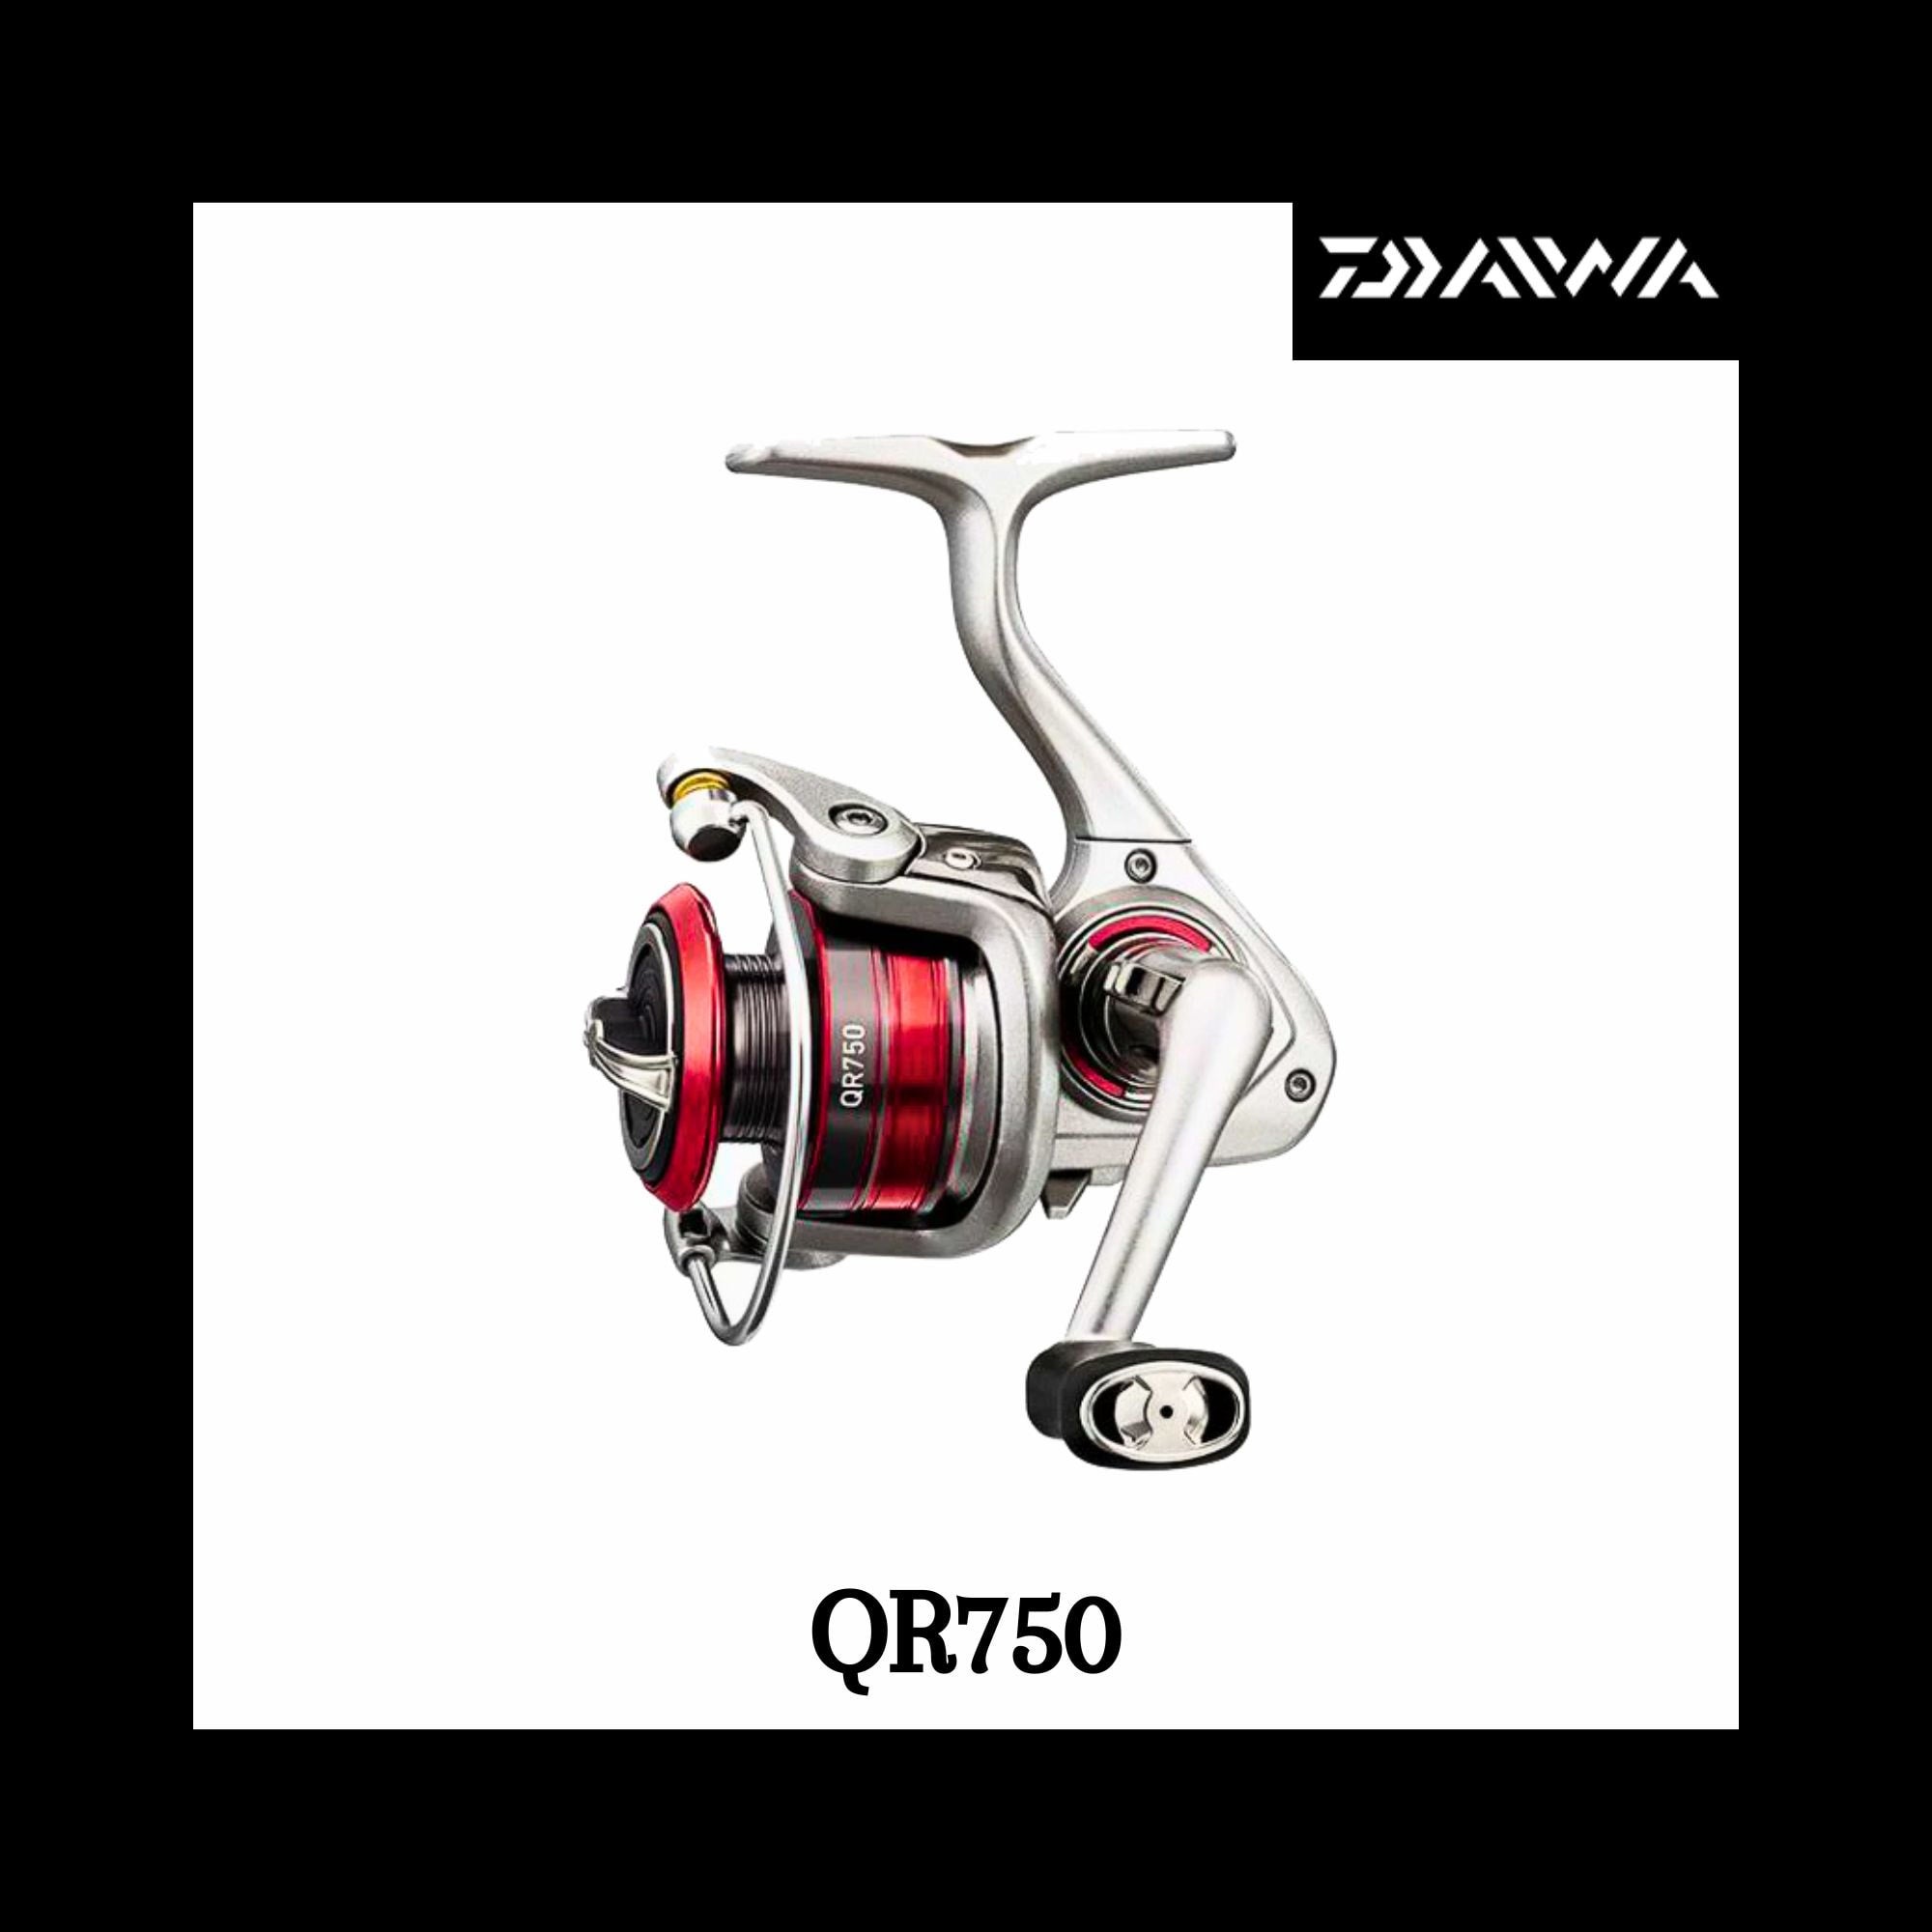 Daiwa Spinning Fishing Reel, QZ750, Ultra Light Reel